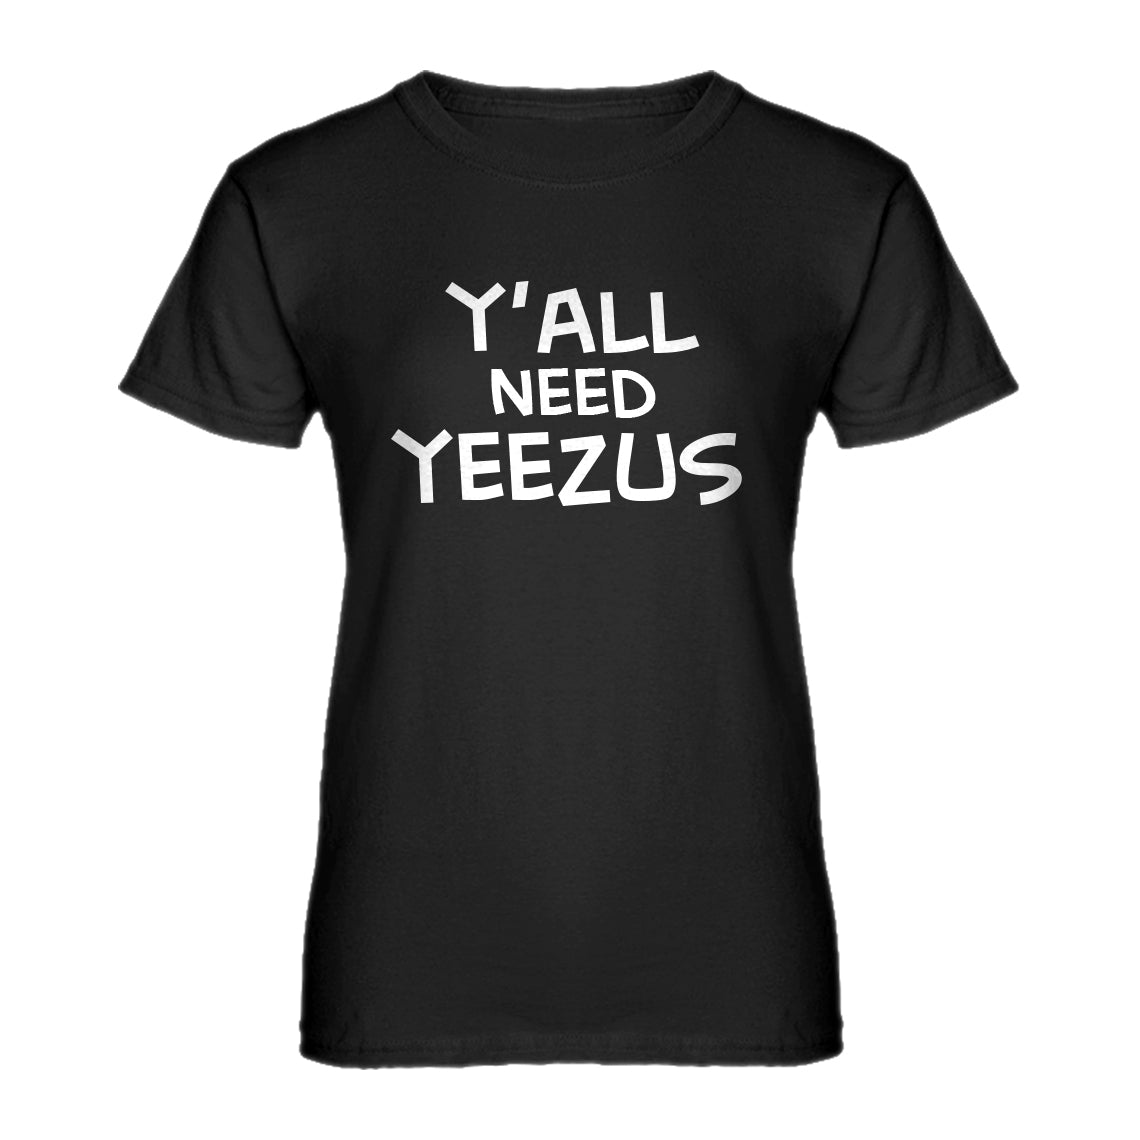 Womens Yall Need Yeezus Ladies' T-shirt